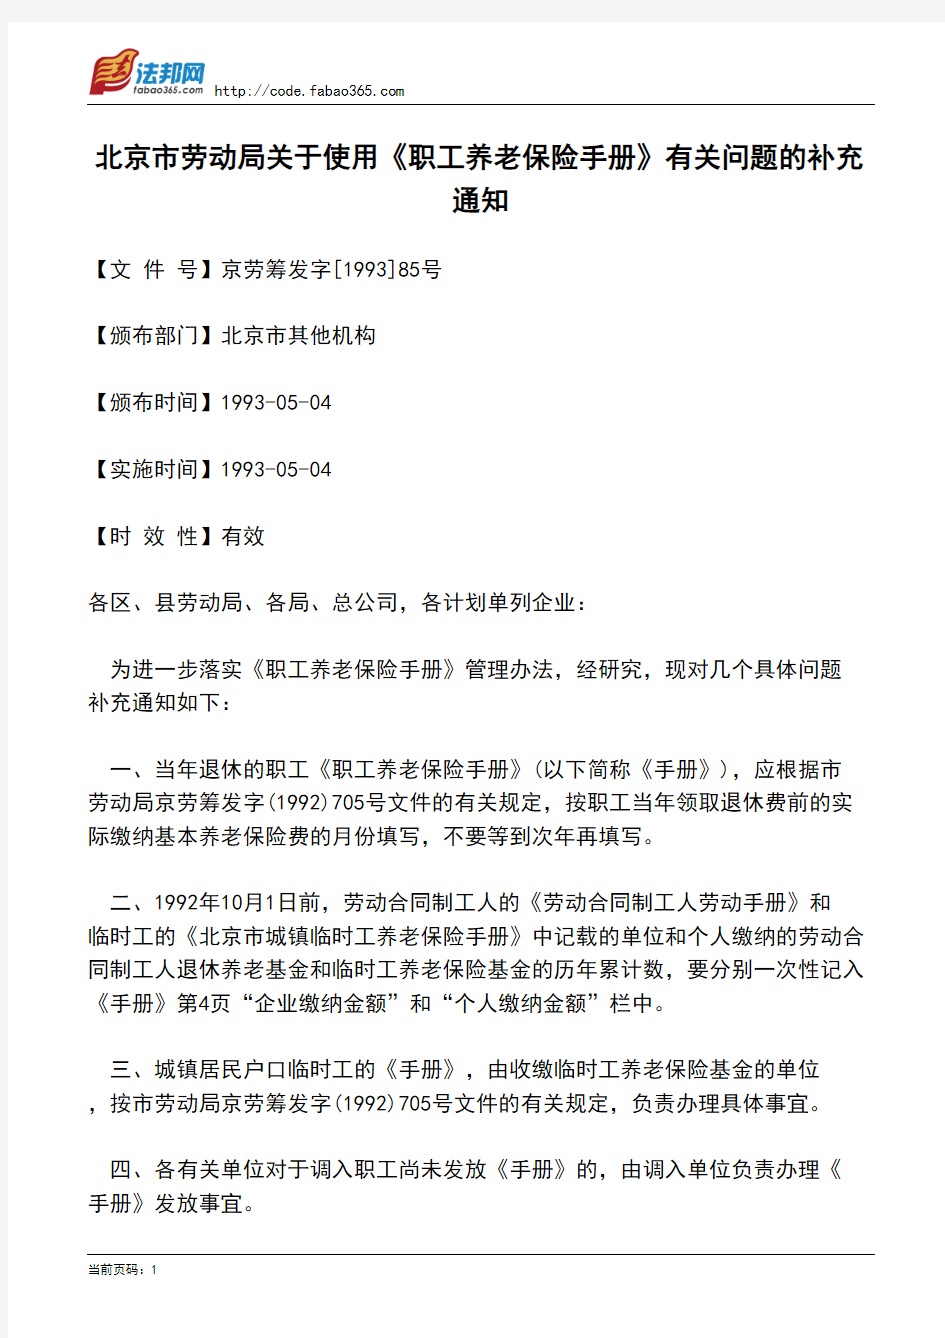 北京市劳动局关于使用《职工养老保险手册》有关问题的补充通知